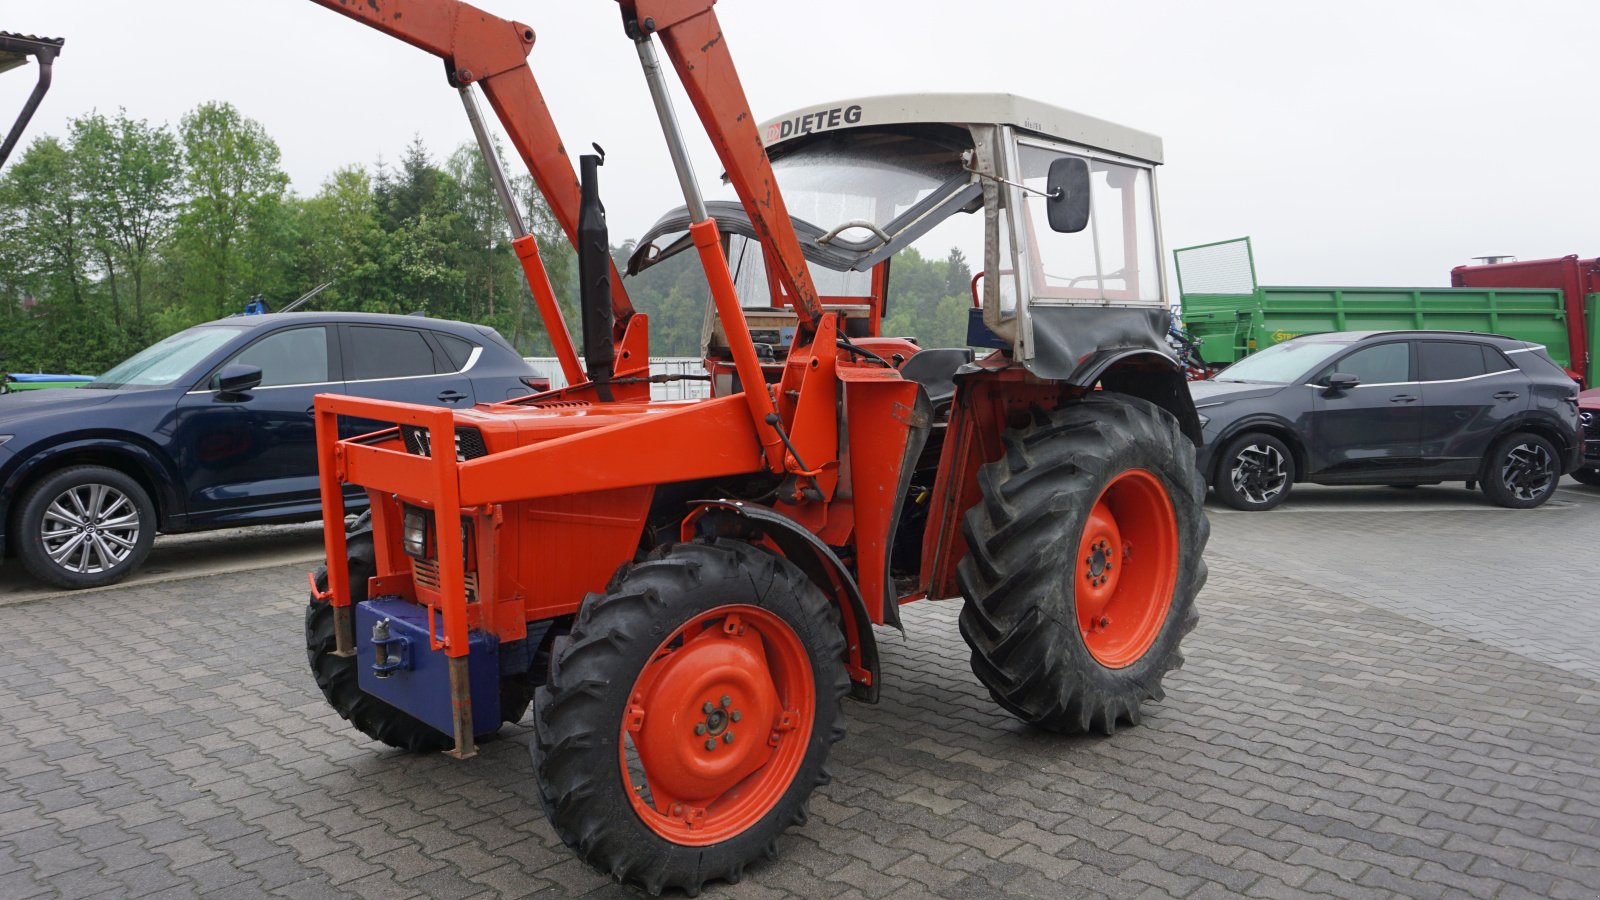 Traktor des Typs Same Minitauro 55, Gebrauchtmaschine in Rötz (Bild 1)